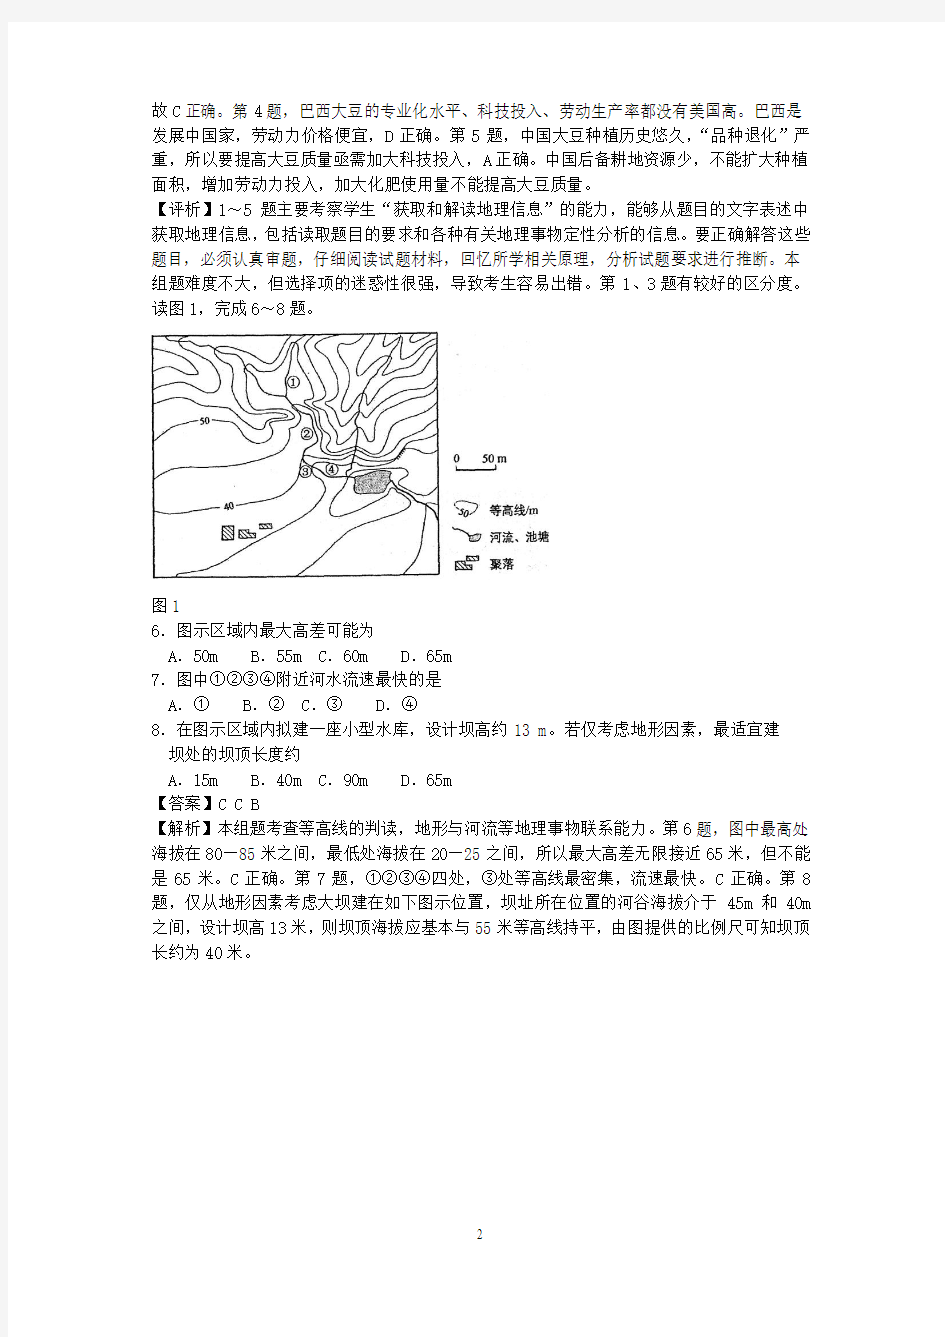 【地理】2011年高考真题——文综地理(湖南卷)解析版